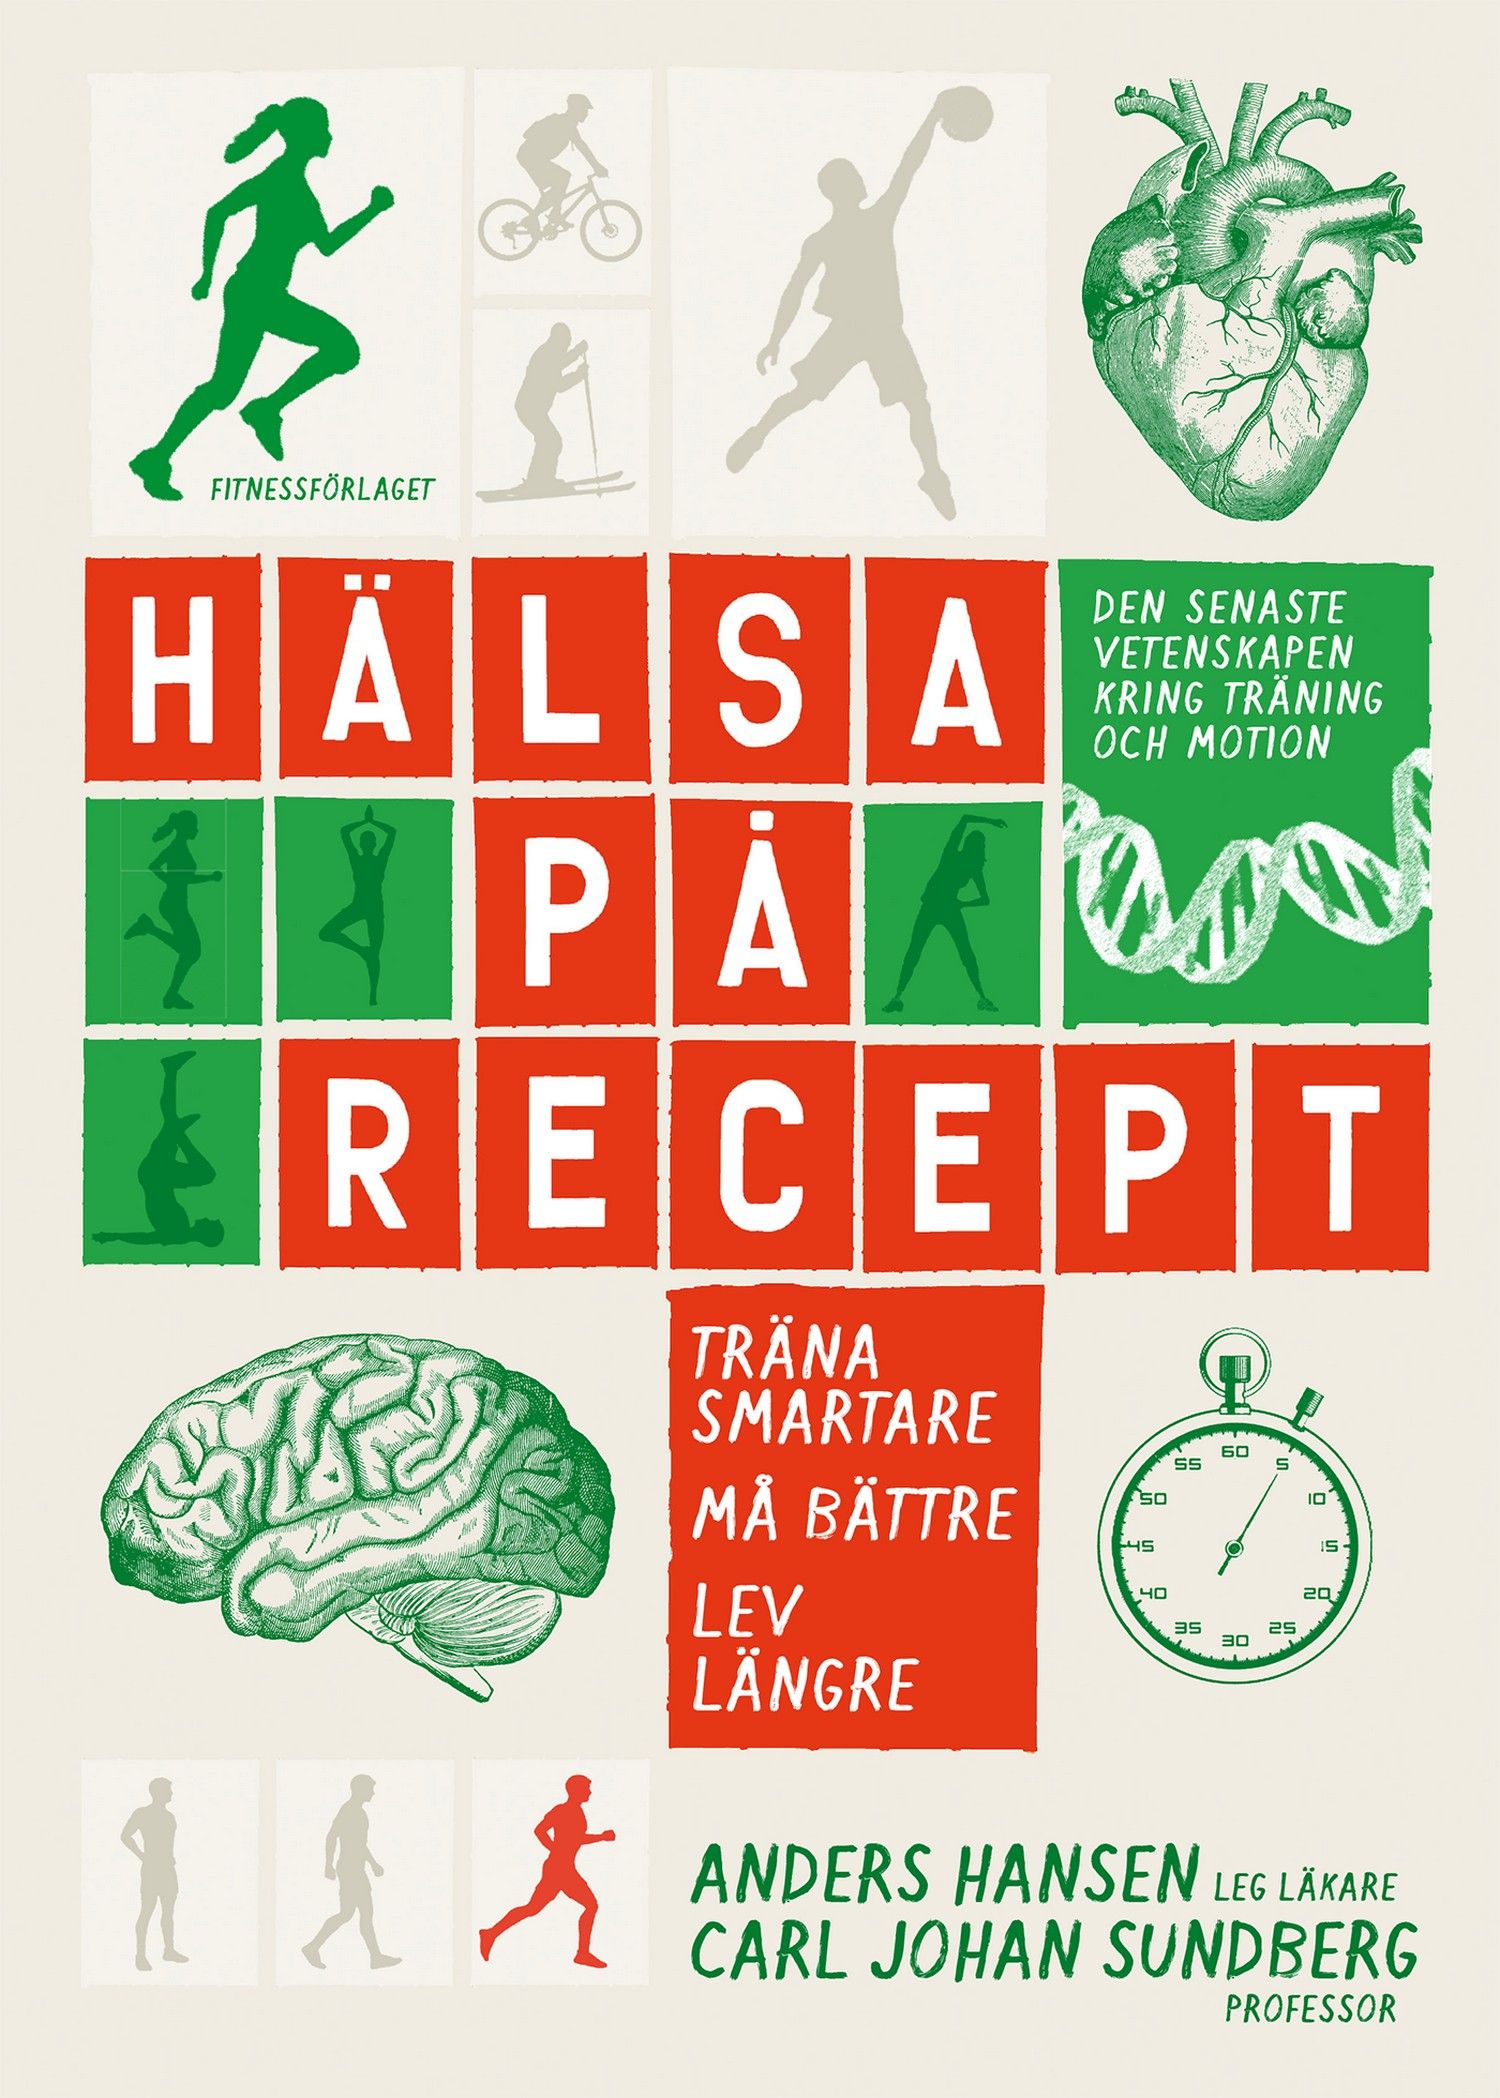 Hälsa på recept : träna smartare, må bättre, lev längre, eBook by Anders Hansen, Carl Johan Sundberg